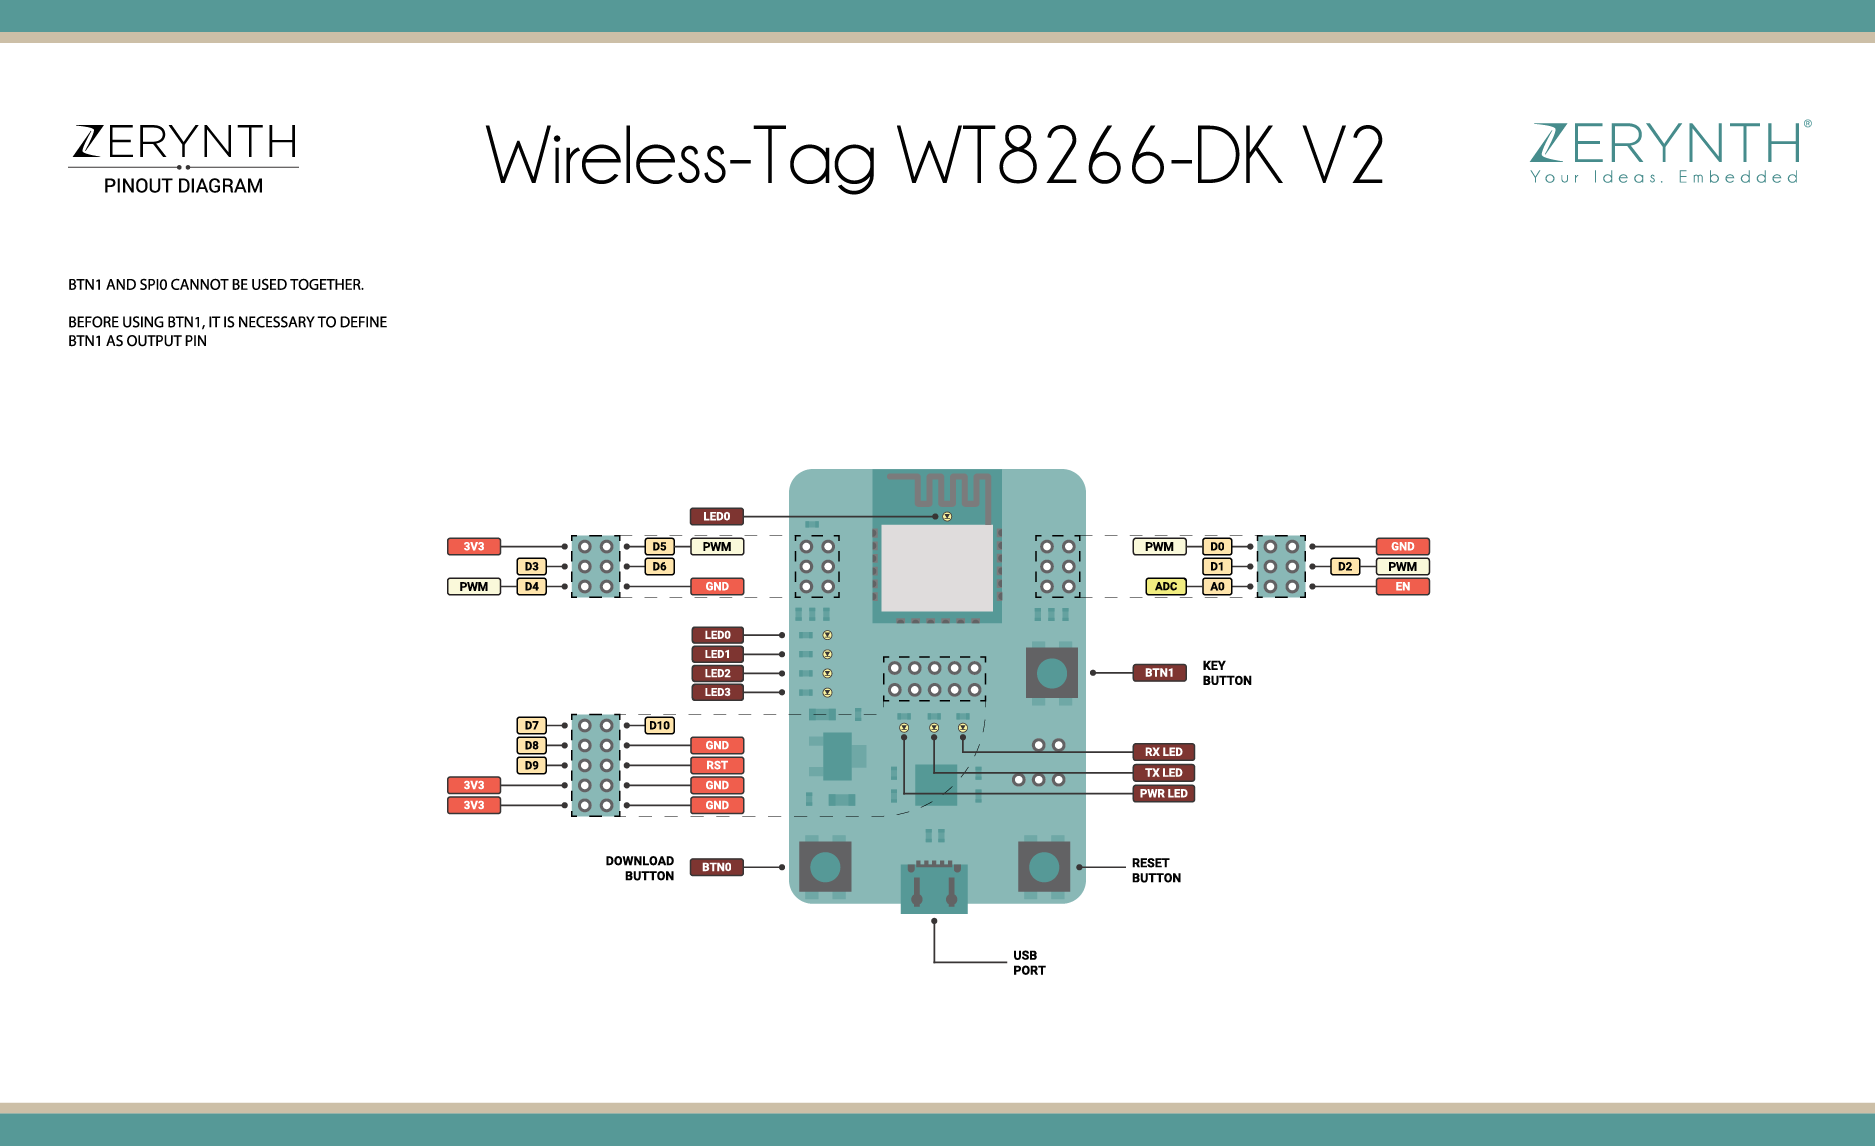 Wireless Tag WT8266-DK V2